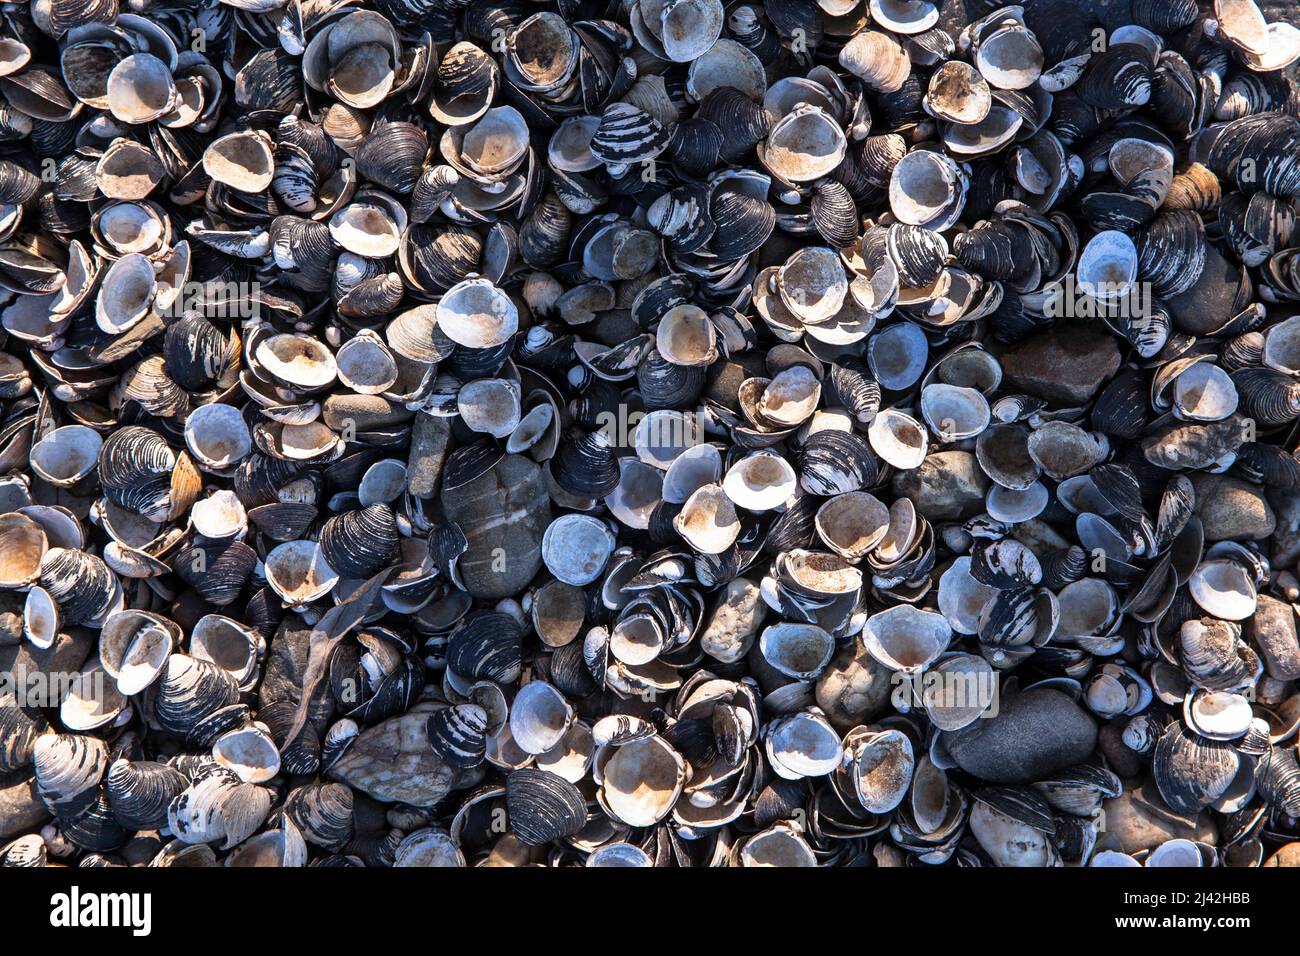 shells at the bank of the Rhine at Zuendorfer Groov, Cologne, Germany. Muscheln liegen in einem Spuelsaum am Rheinufer an der Zuendorfer Groov am Weis Stock Photo